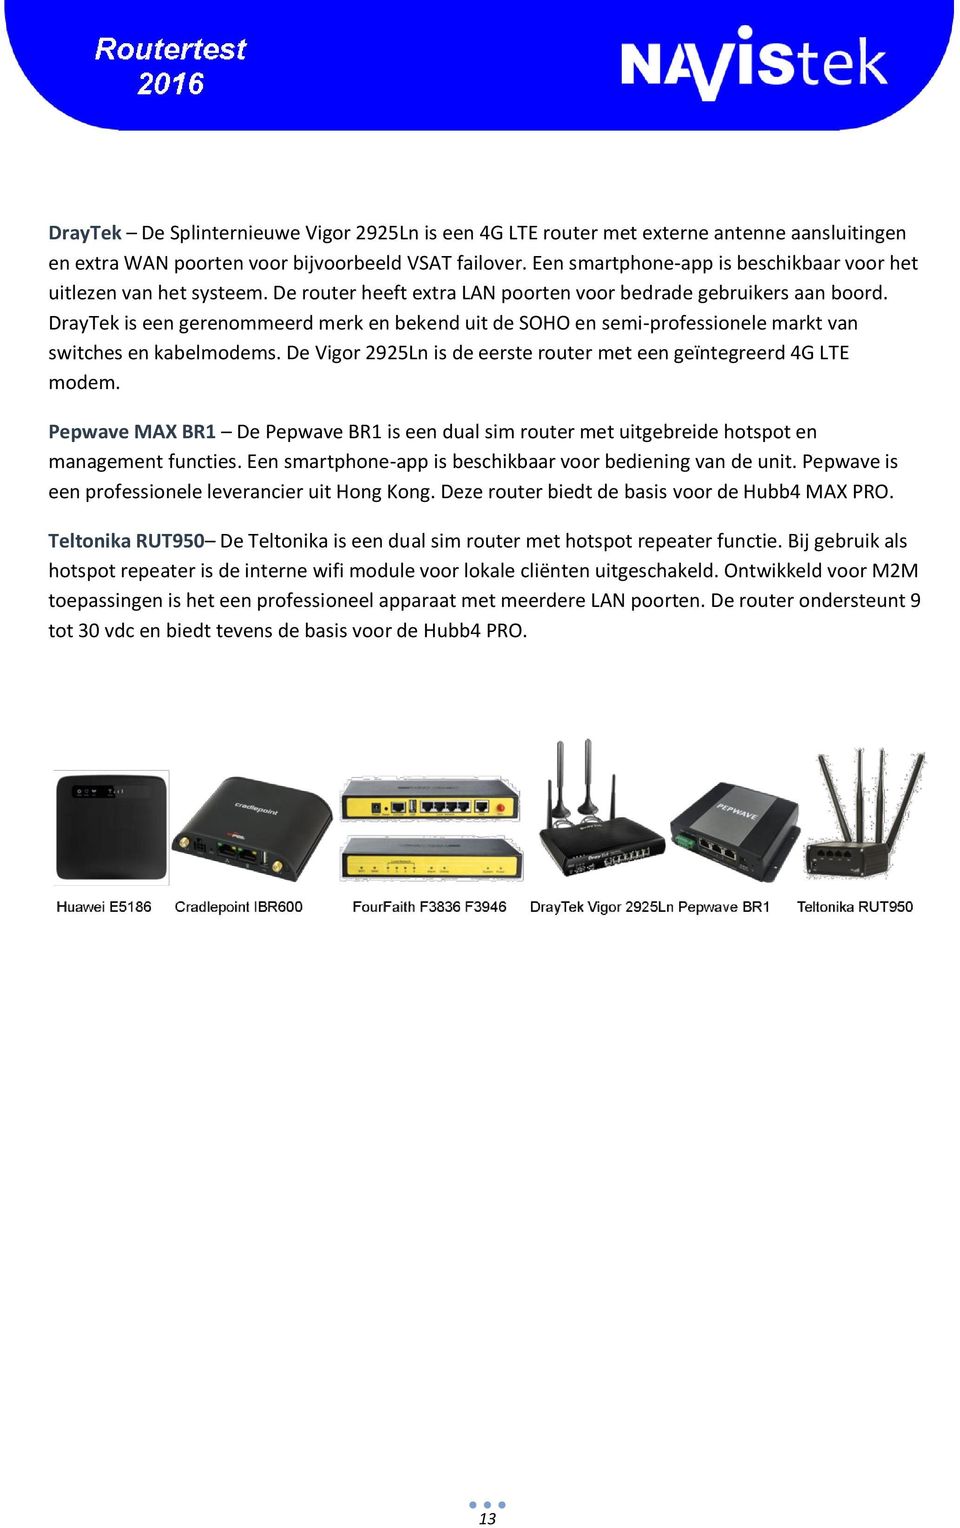 DrayTek is een gerenommeerd merk en bekend uit de SOHO en semi-professionele markt van switches en kabelmodems. De Vigor 2925Ln is de eerste router met een geïntegreerd 4G LTE modem.